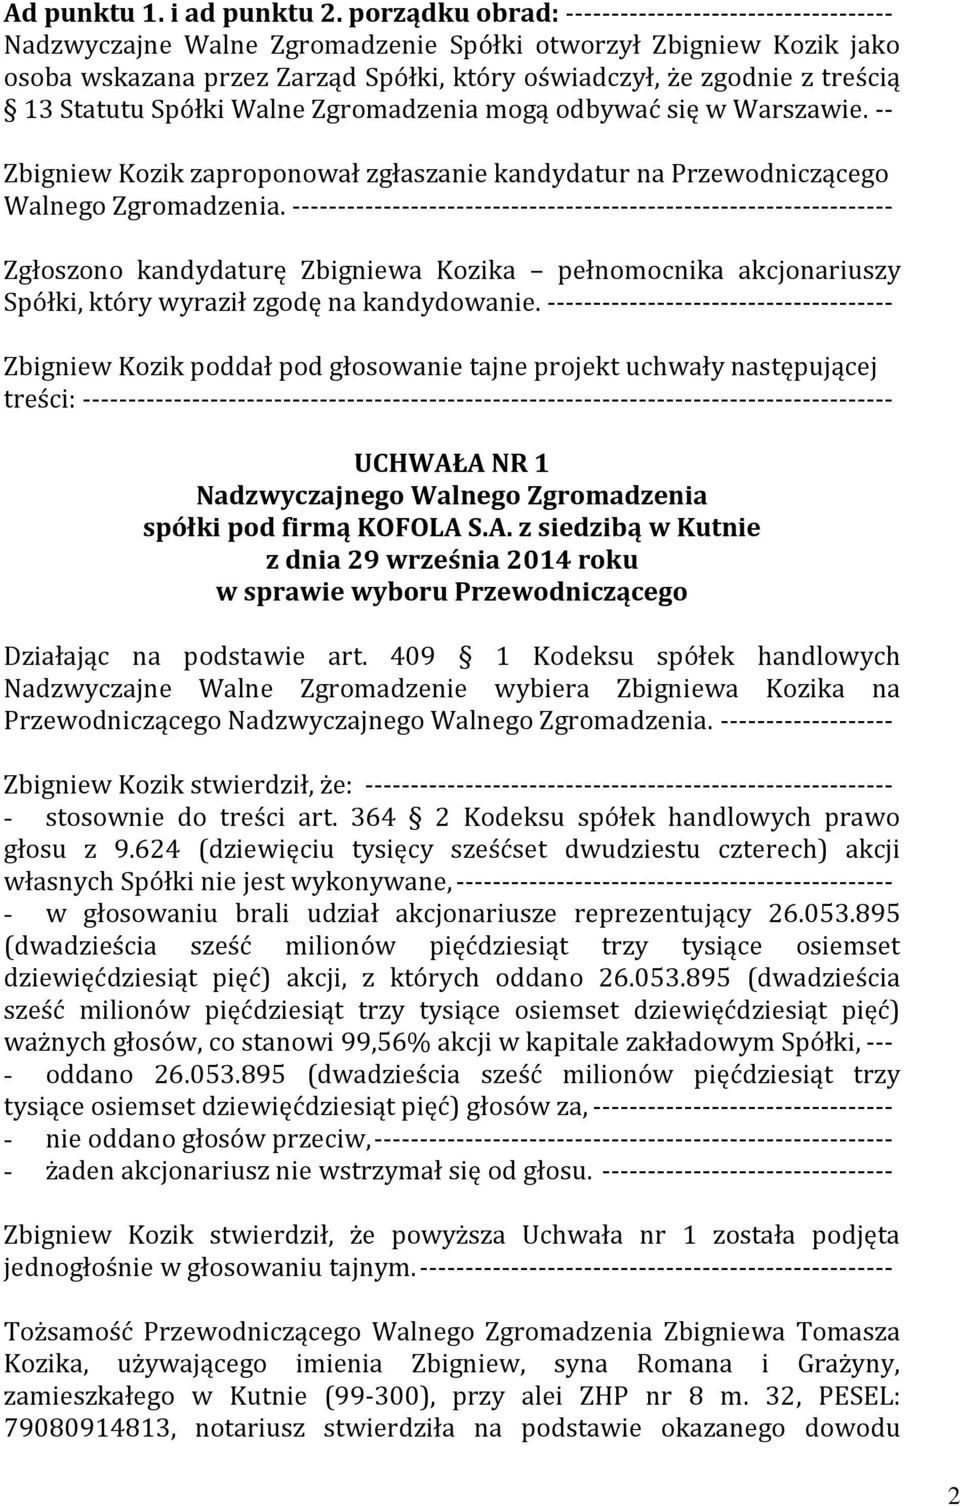 Statutu Spółki Walne Zgromadzenia mogą odbywać się w Warszawie. -- Zbigniew Kozik zaproponował zgłaszanie kandydatur na Przewodniczącego Walnego Zgromadzenia.